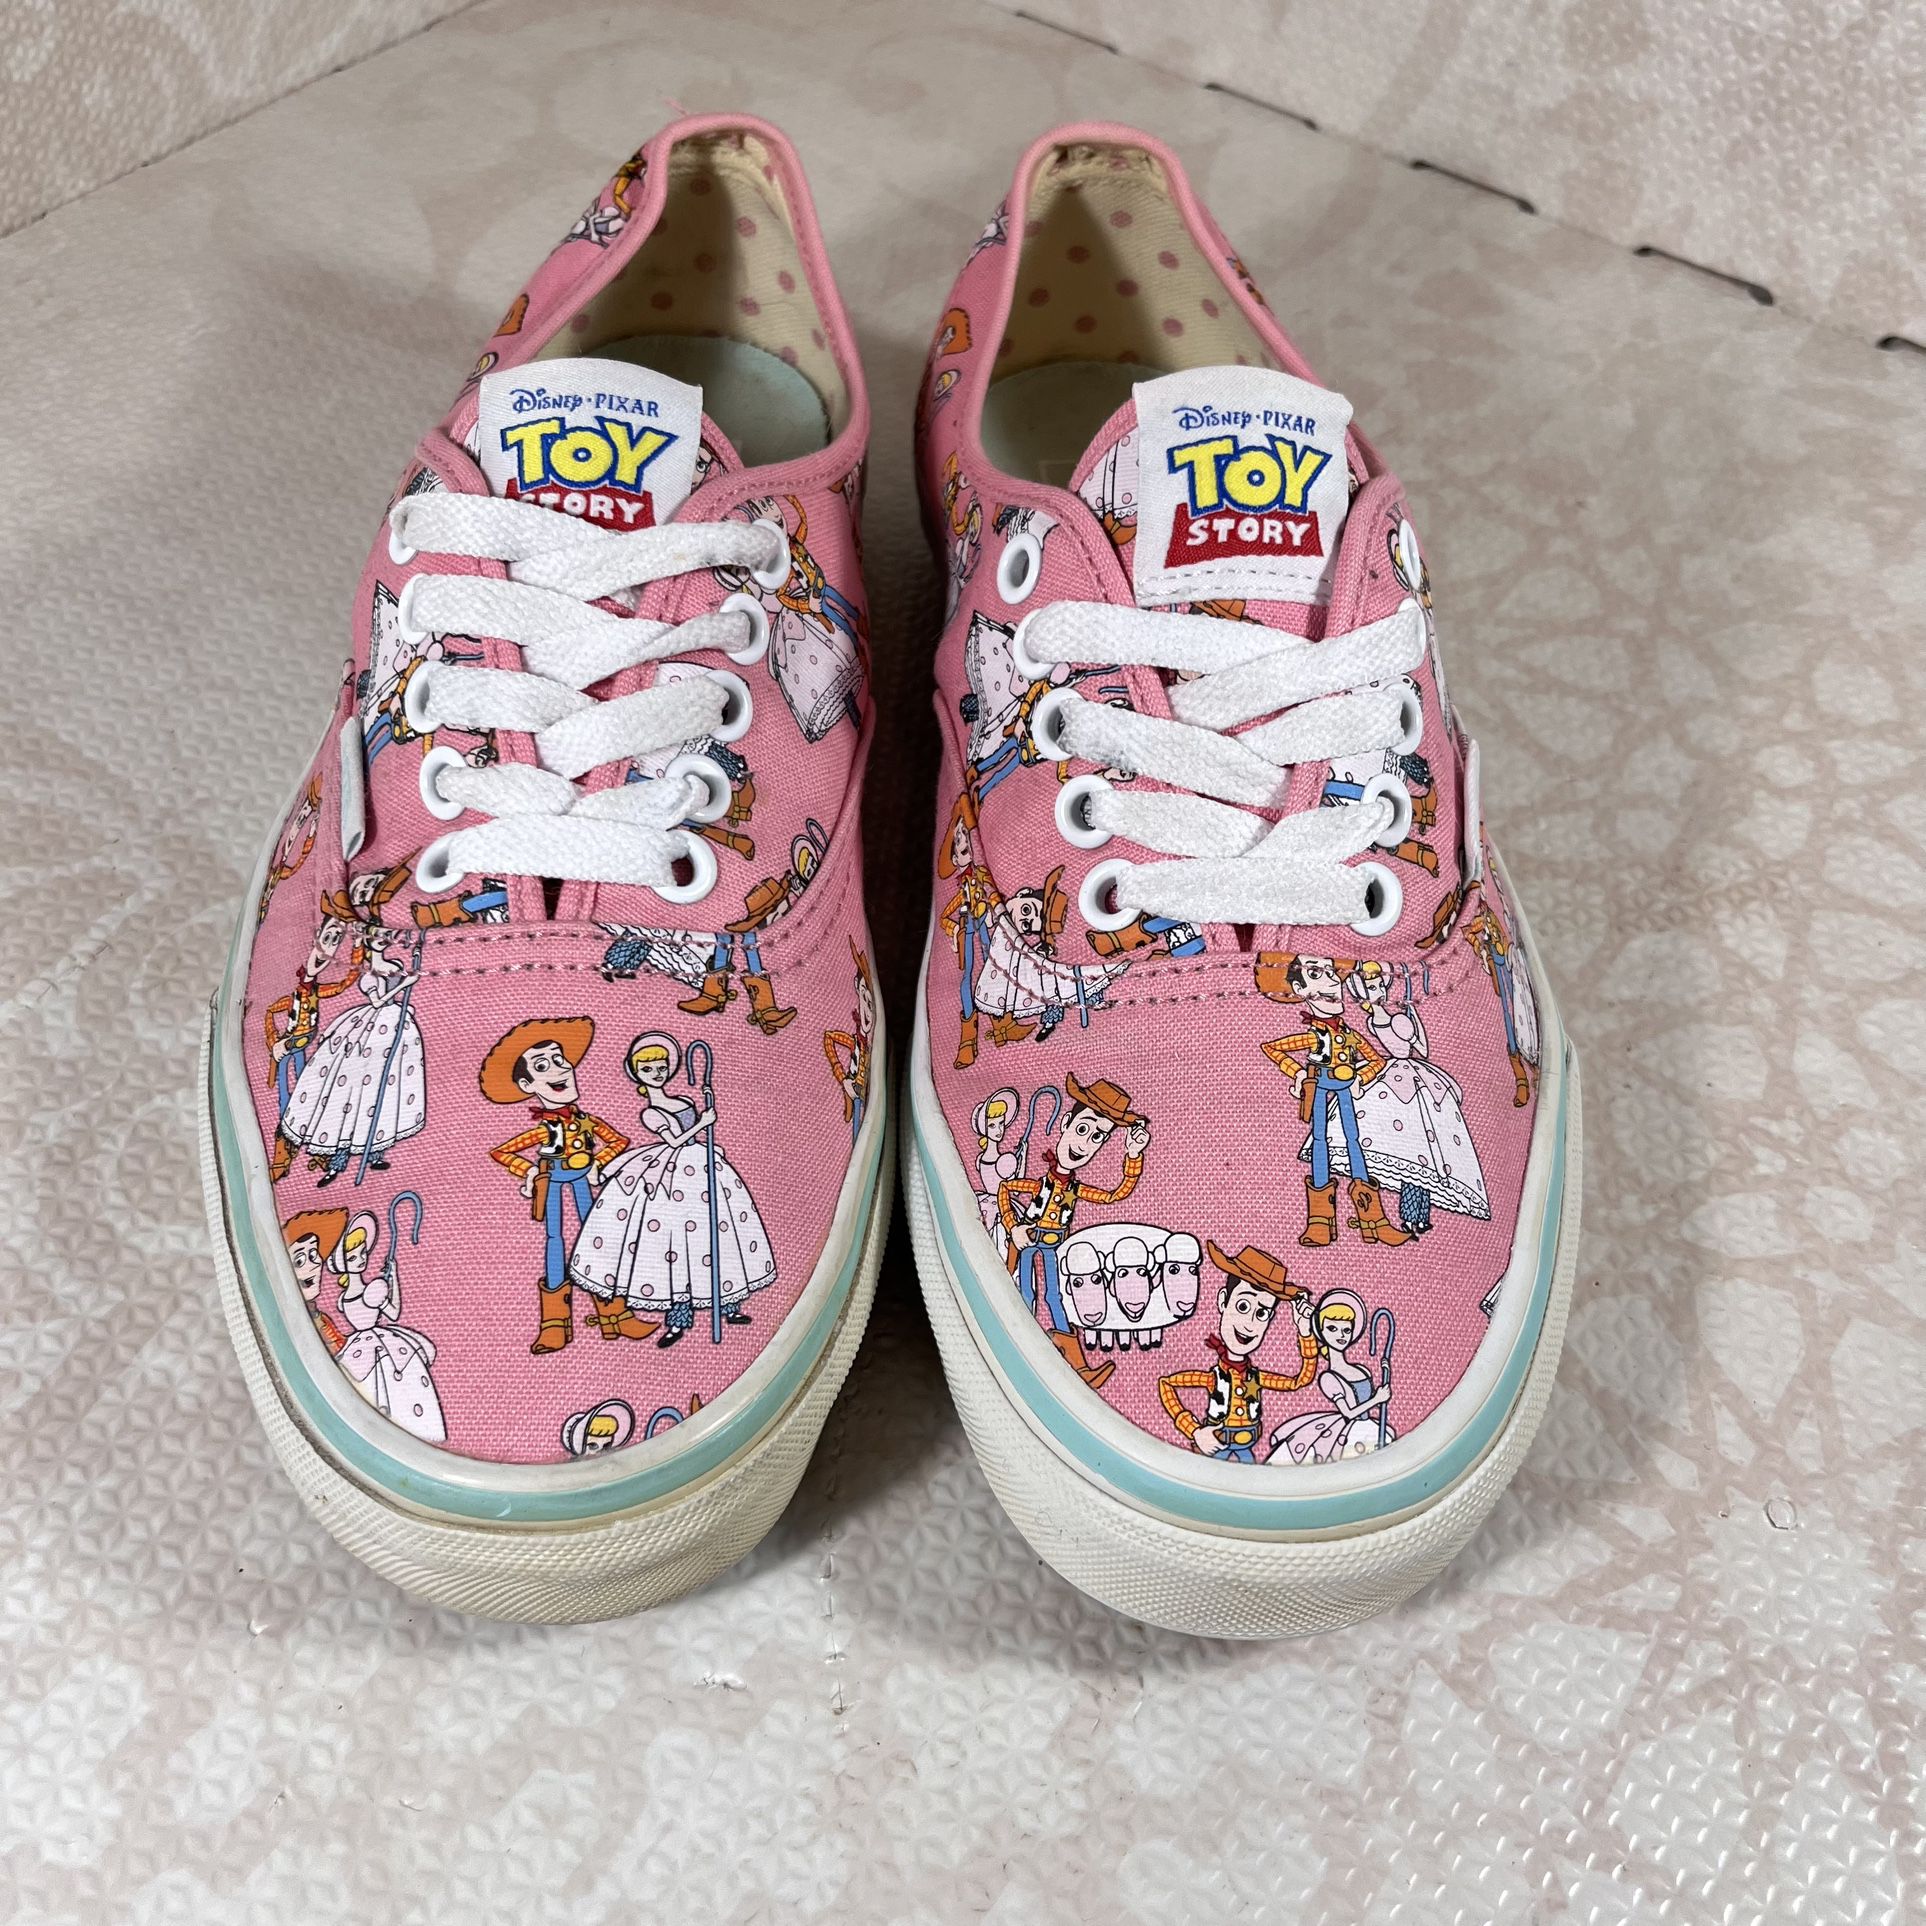 Vans Disney Pixar Toy Story Pink Women’s Sneakers Tennis Shoes Size 8 Men’s 6.5